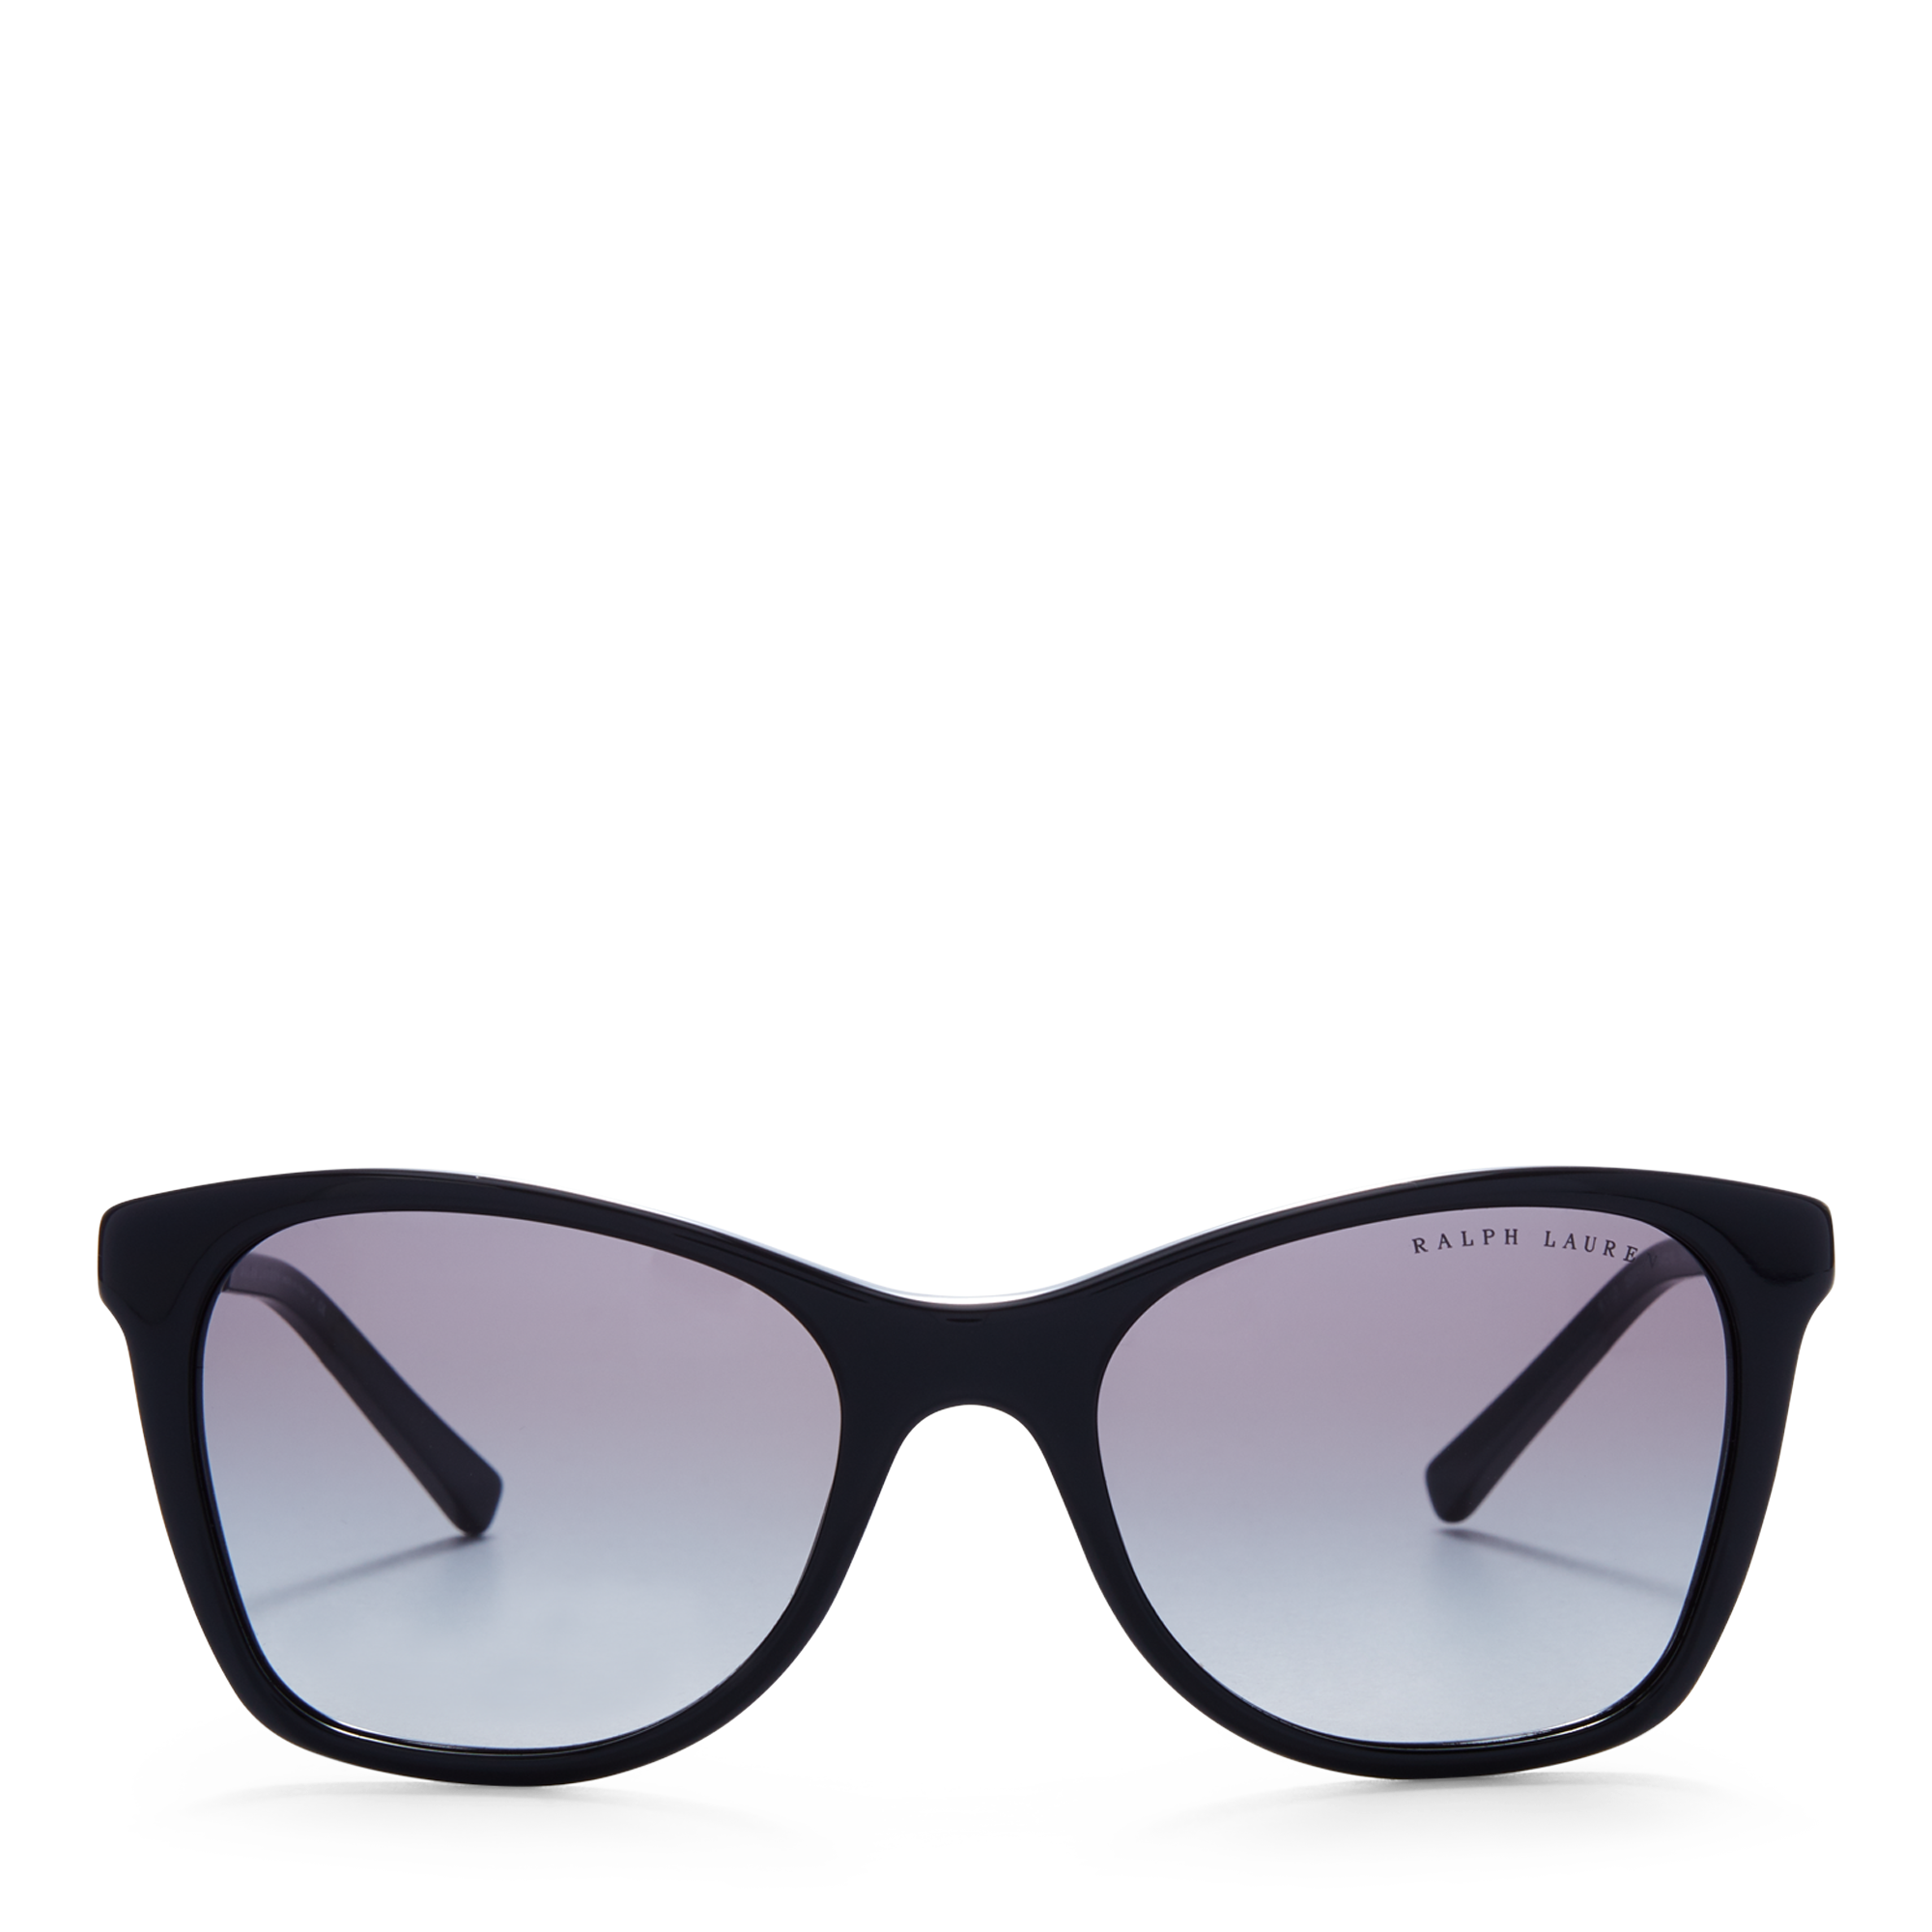 Ralph Lauren Art Deco Square Sunglasses. 1